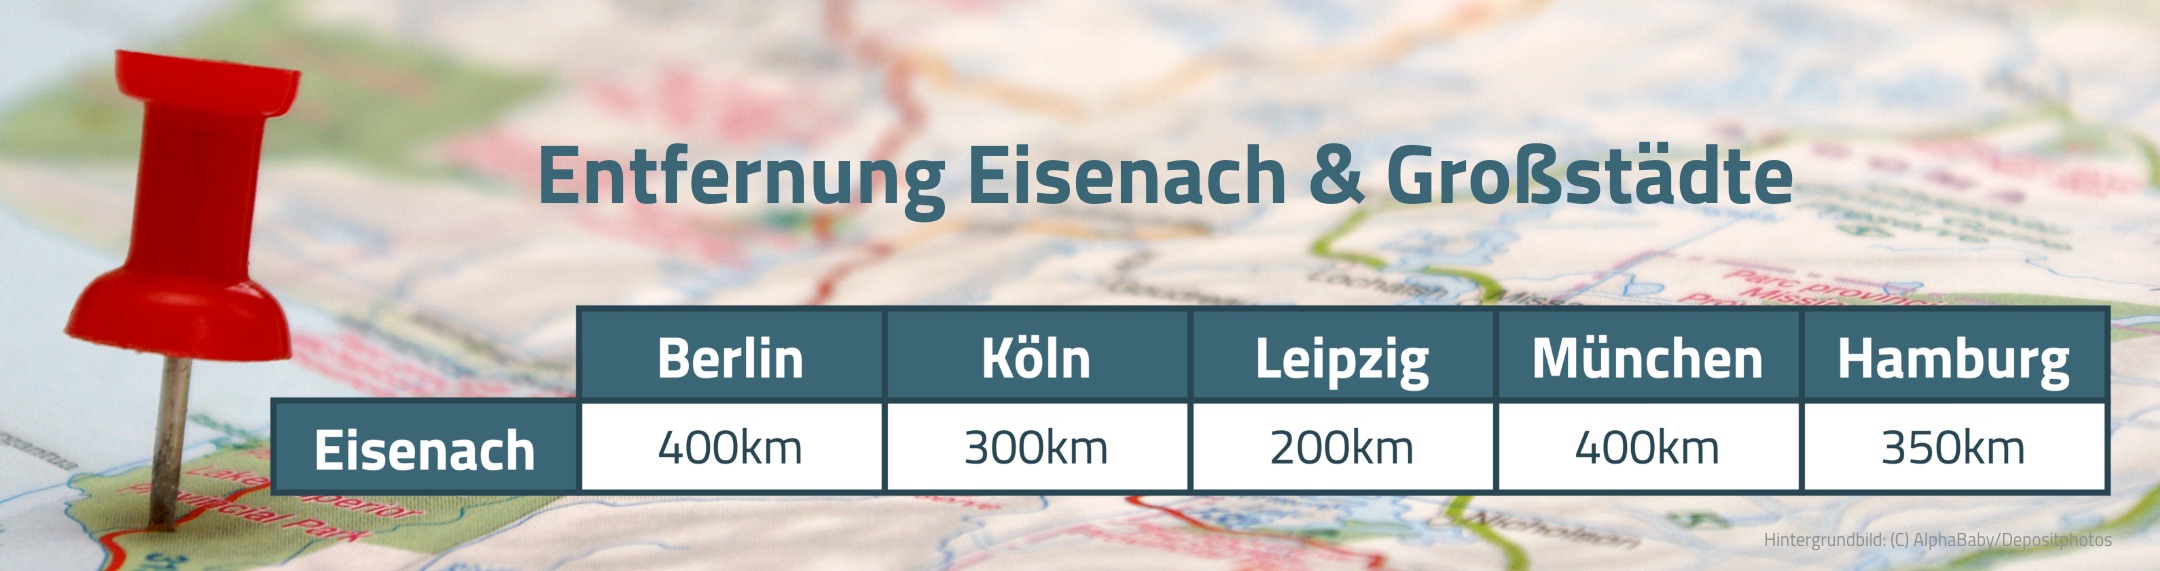 Entfernung zwischen Eisenach und div. Größstädten